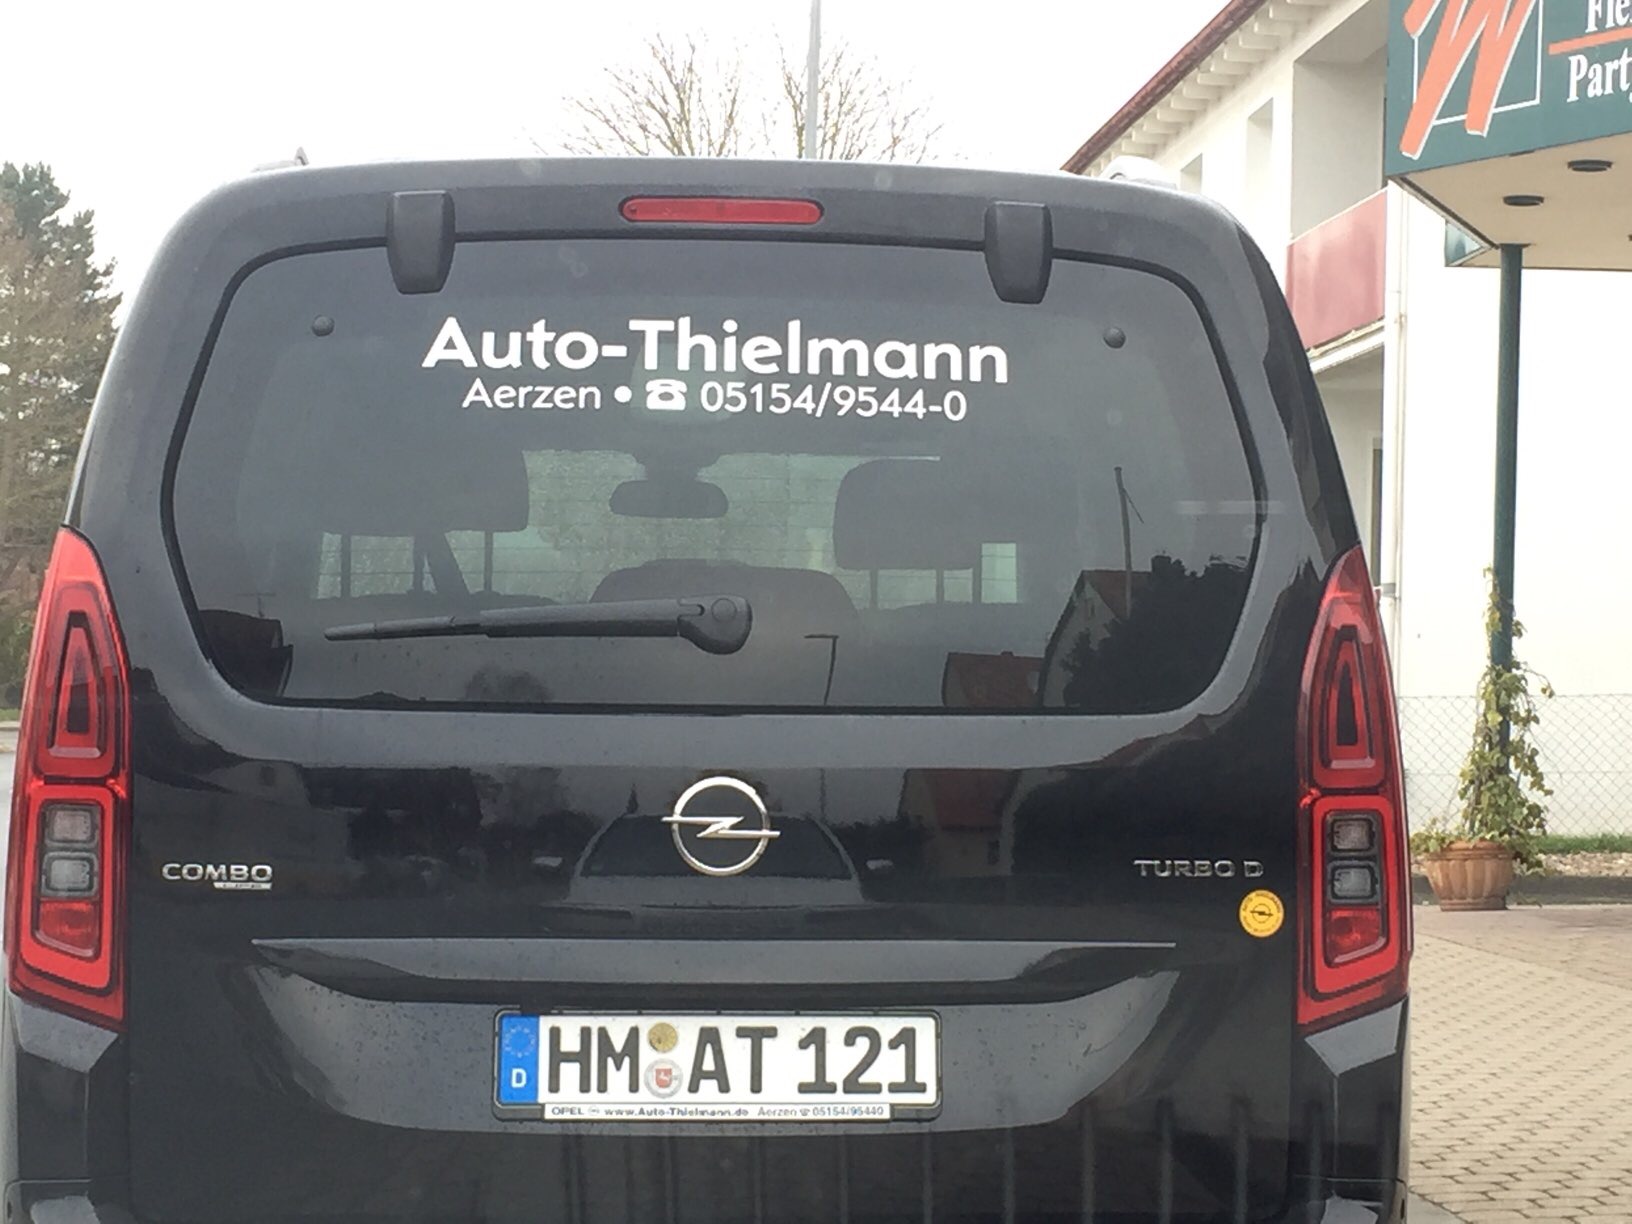 Bild 5 Auto-Thielmann GmbH in Aerzen